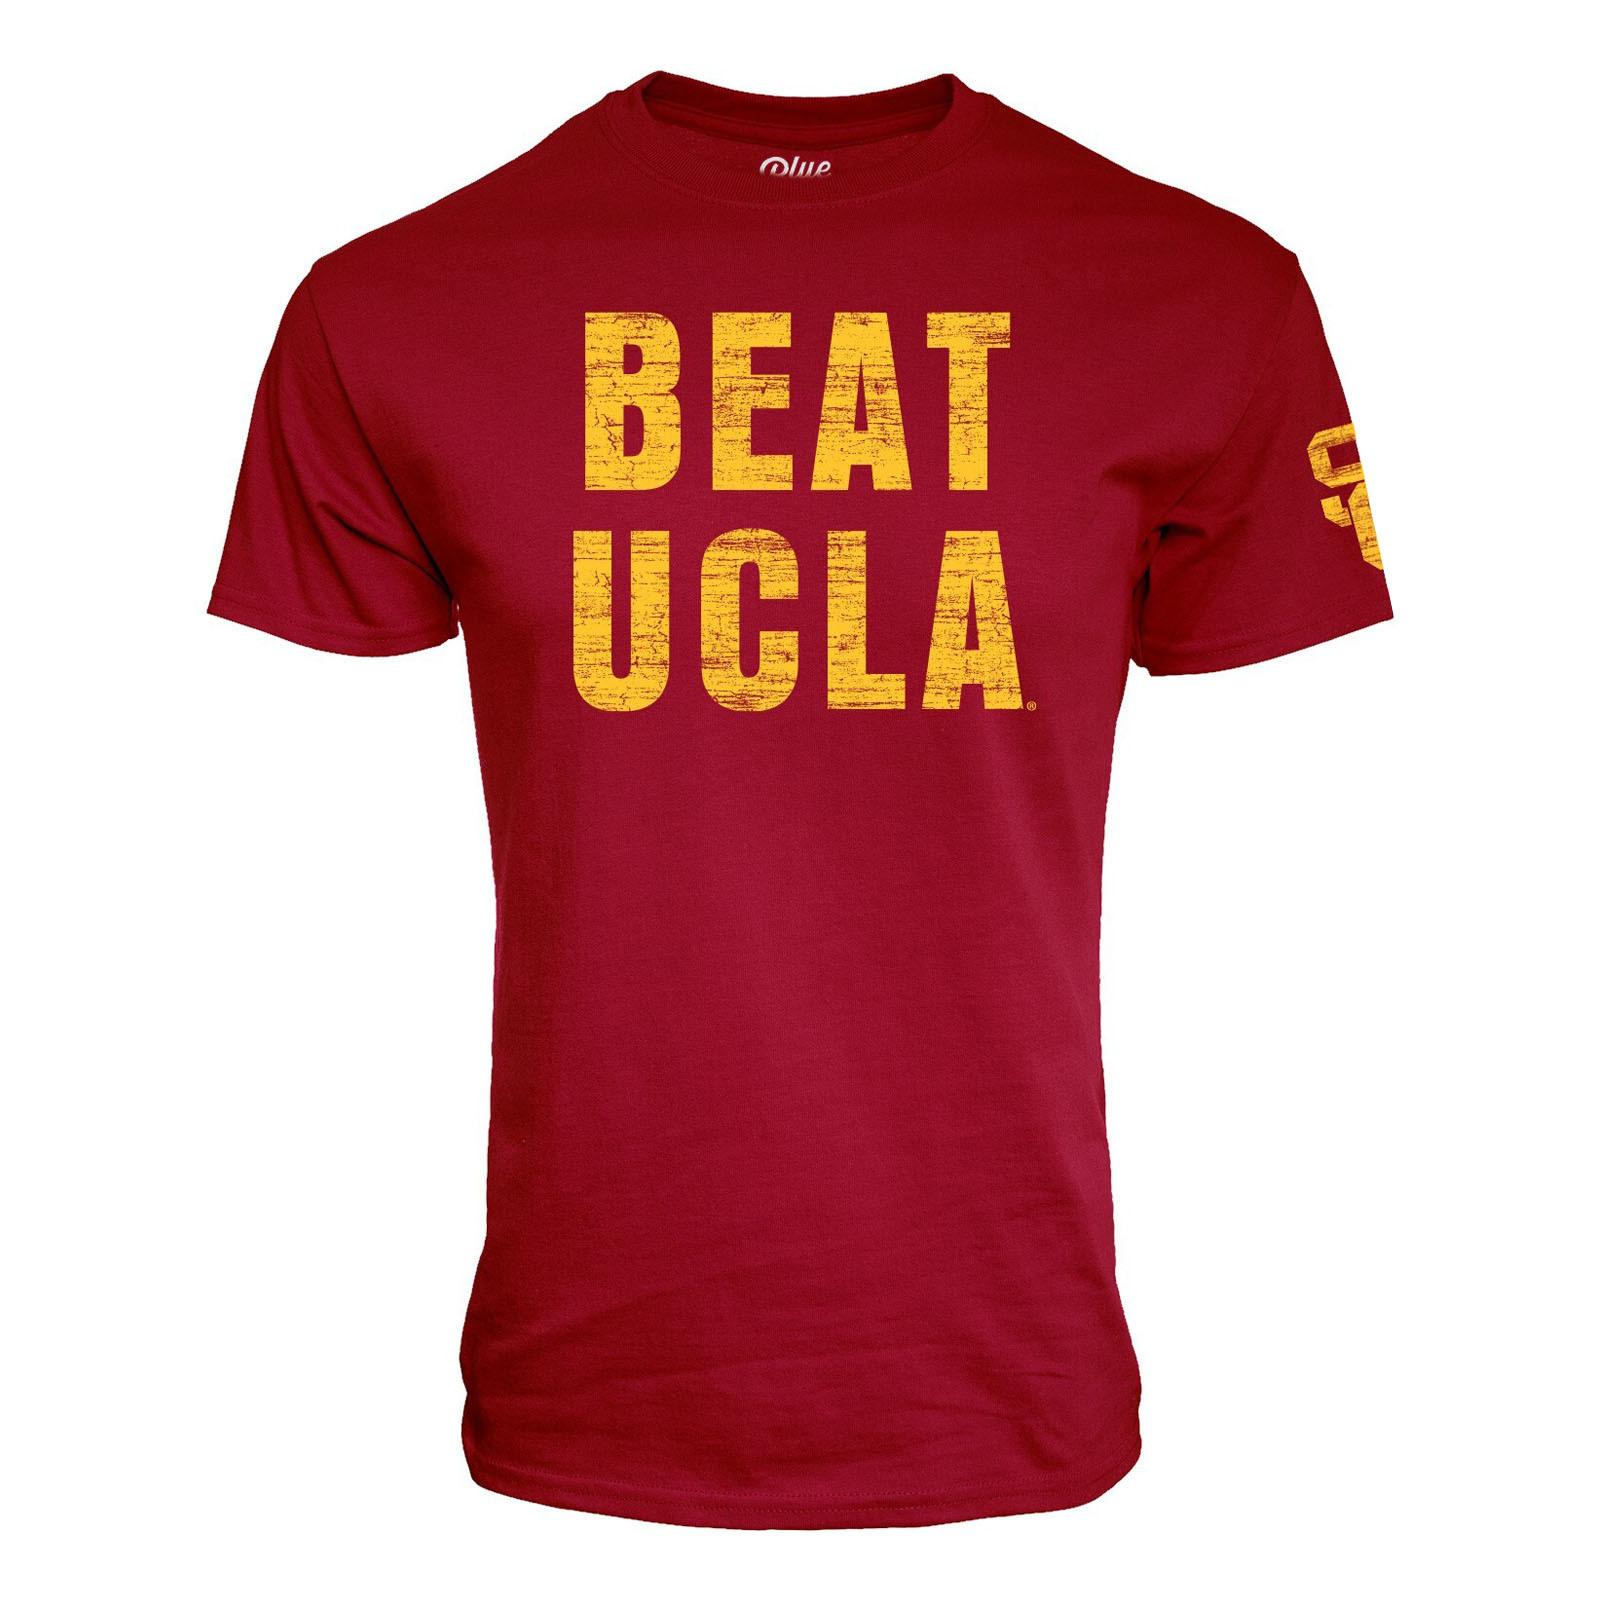 USC Beat UCLA Unisex SS Tee image01